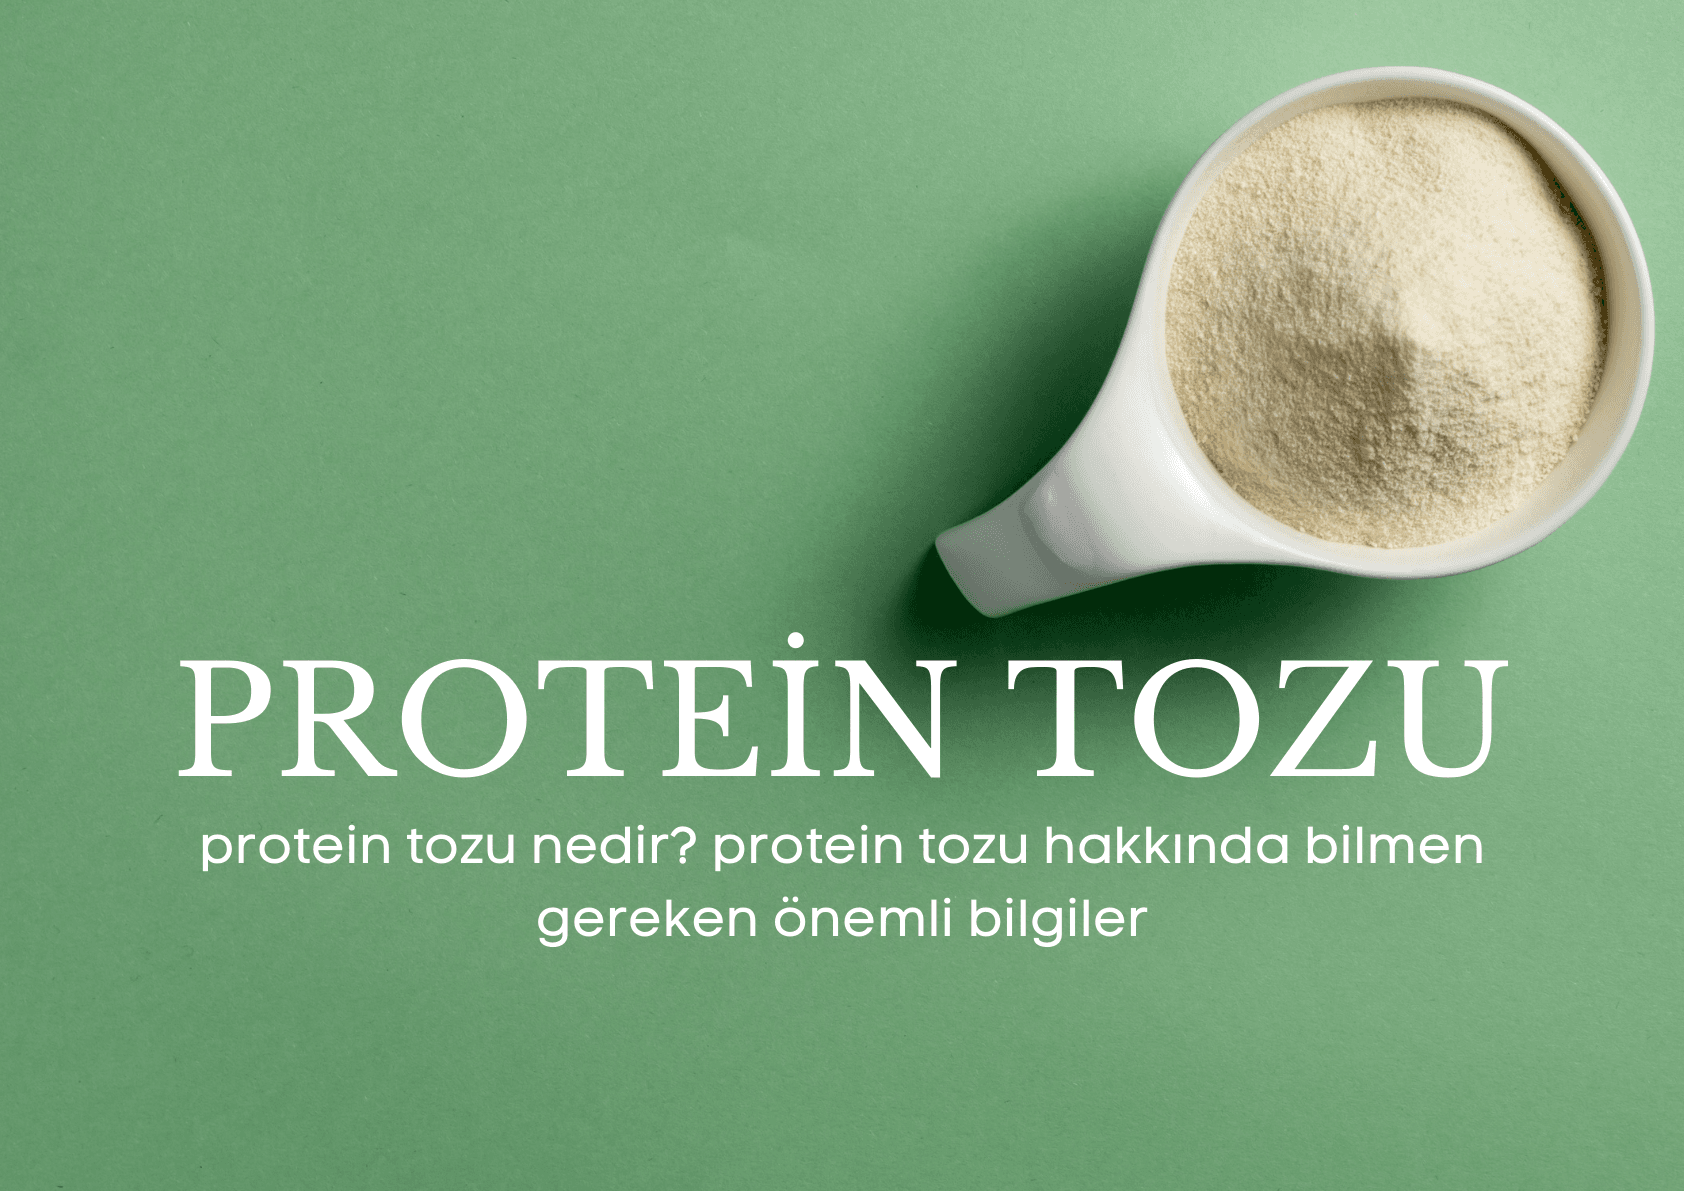 protein tozu nedir? protein tozu hakkında bilmen gereken önemli bilgiler